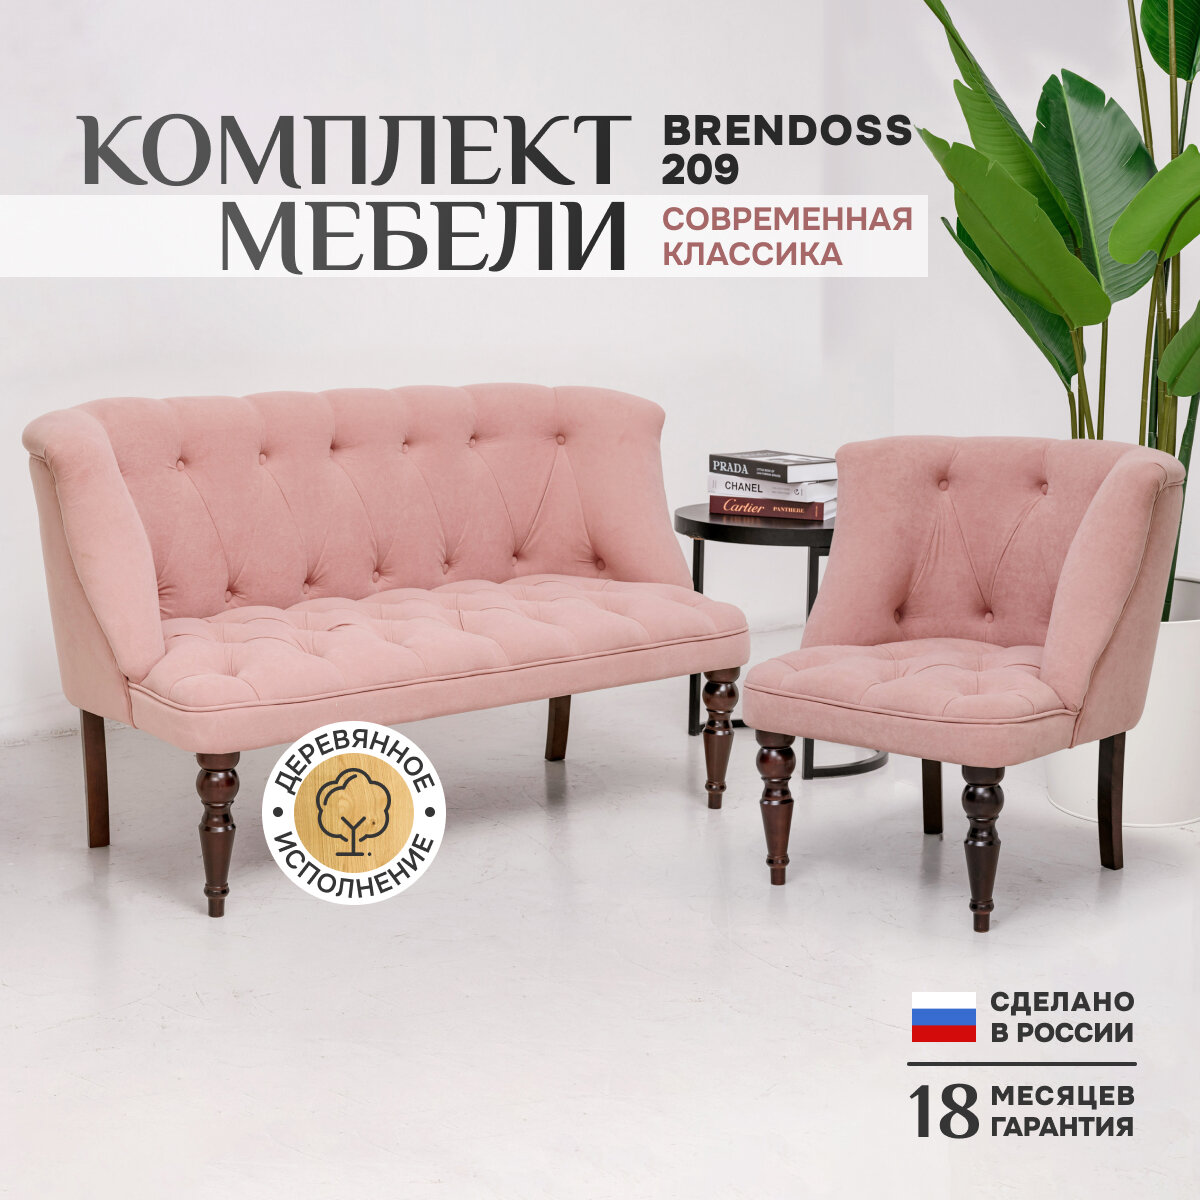 Комплект 209, прямой диван и кресло, каретная стяжка, материал износостойкий велюр, черные ножки, цвет розовый